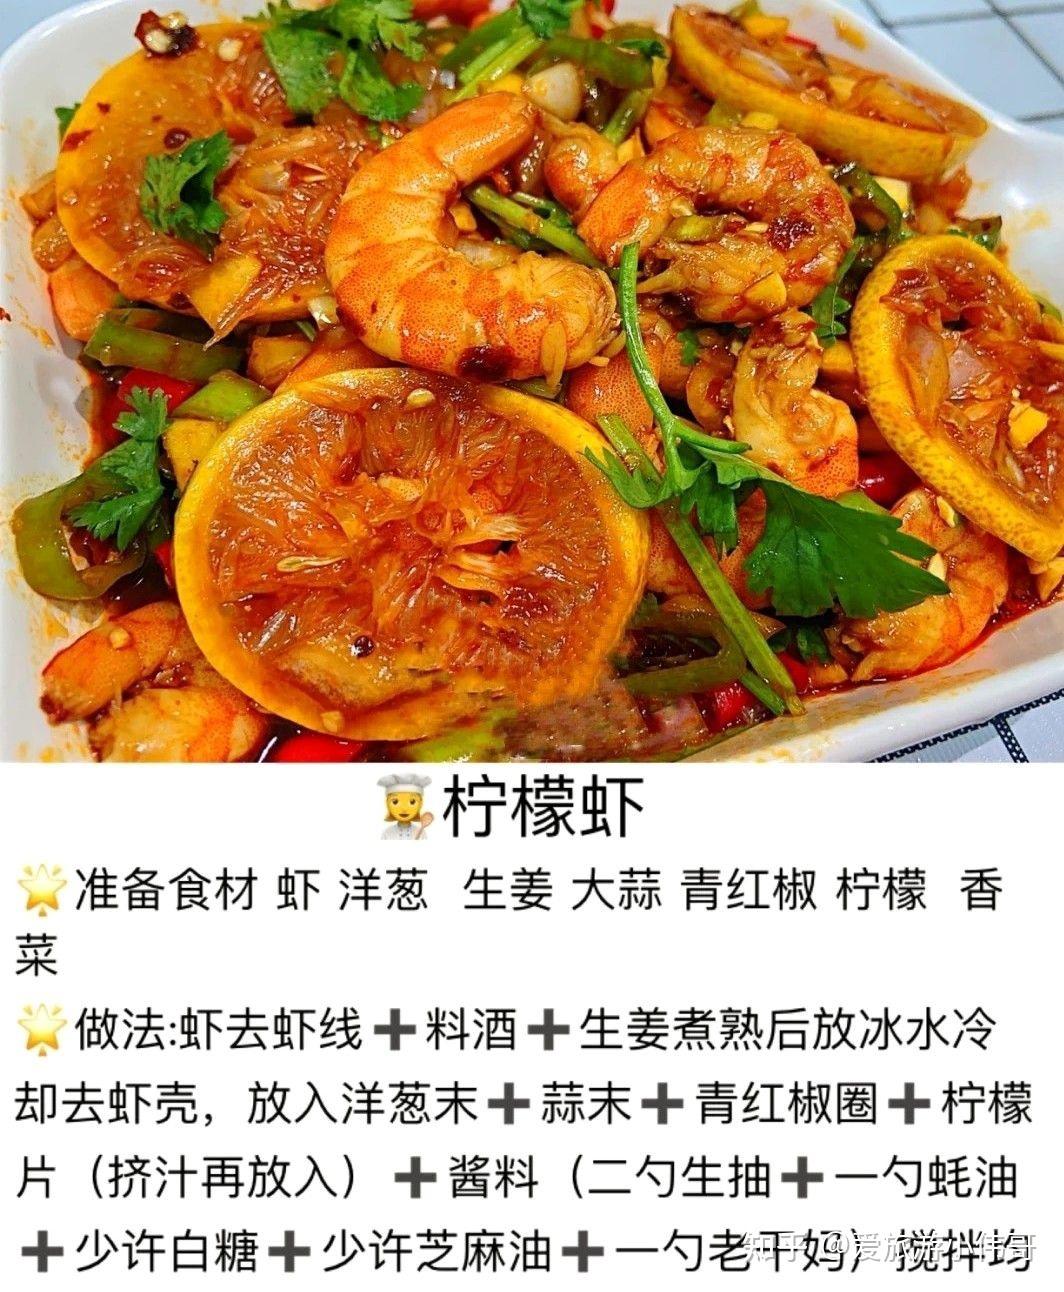 水煮活虾的做法_菜谱_豆果美食